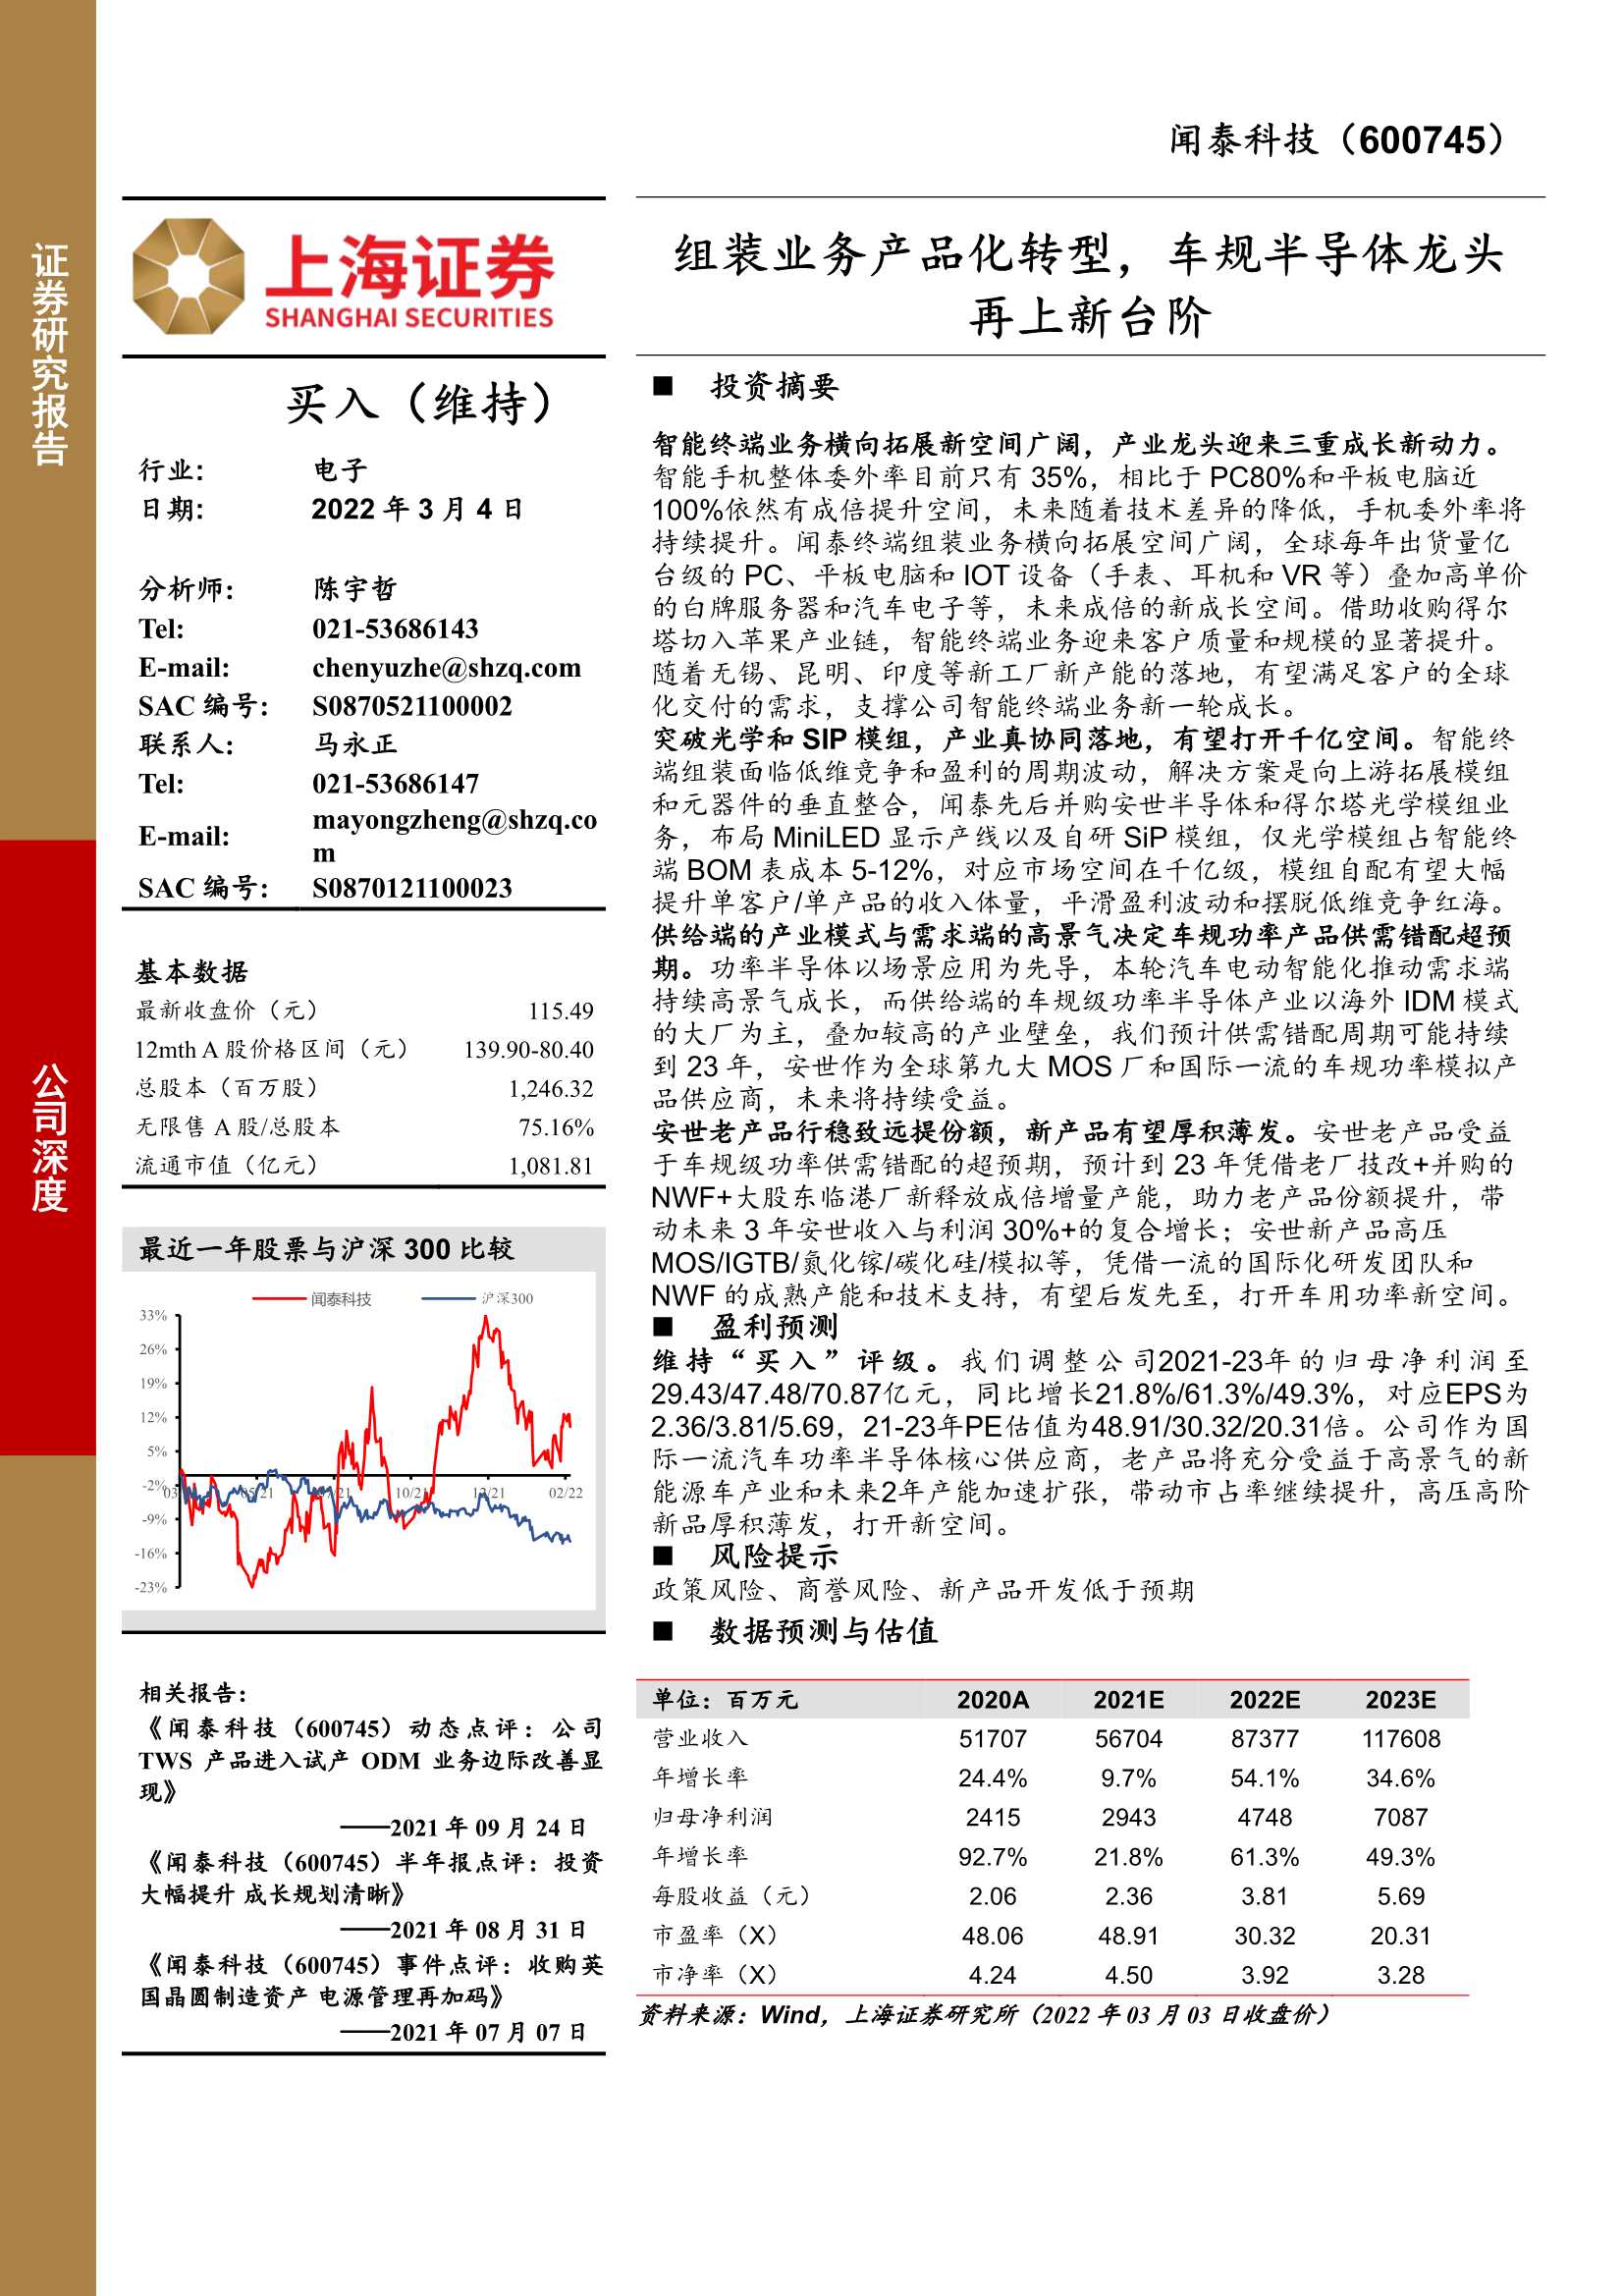 上海证券-闻泰科技-600745-组装业务产品化转型，车规半导体龙头再上新台阶-20220304-27页